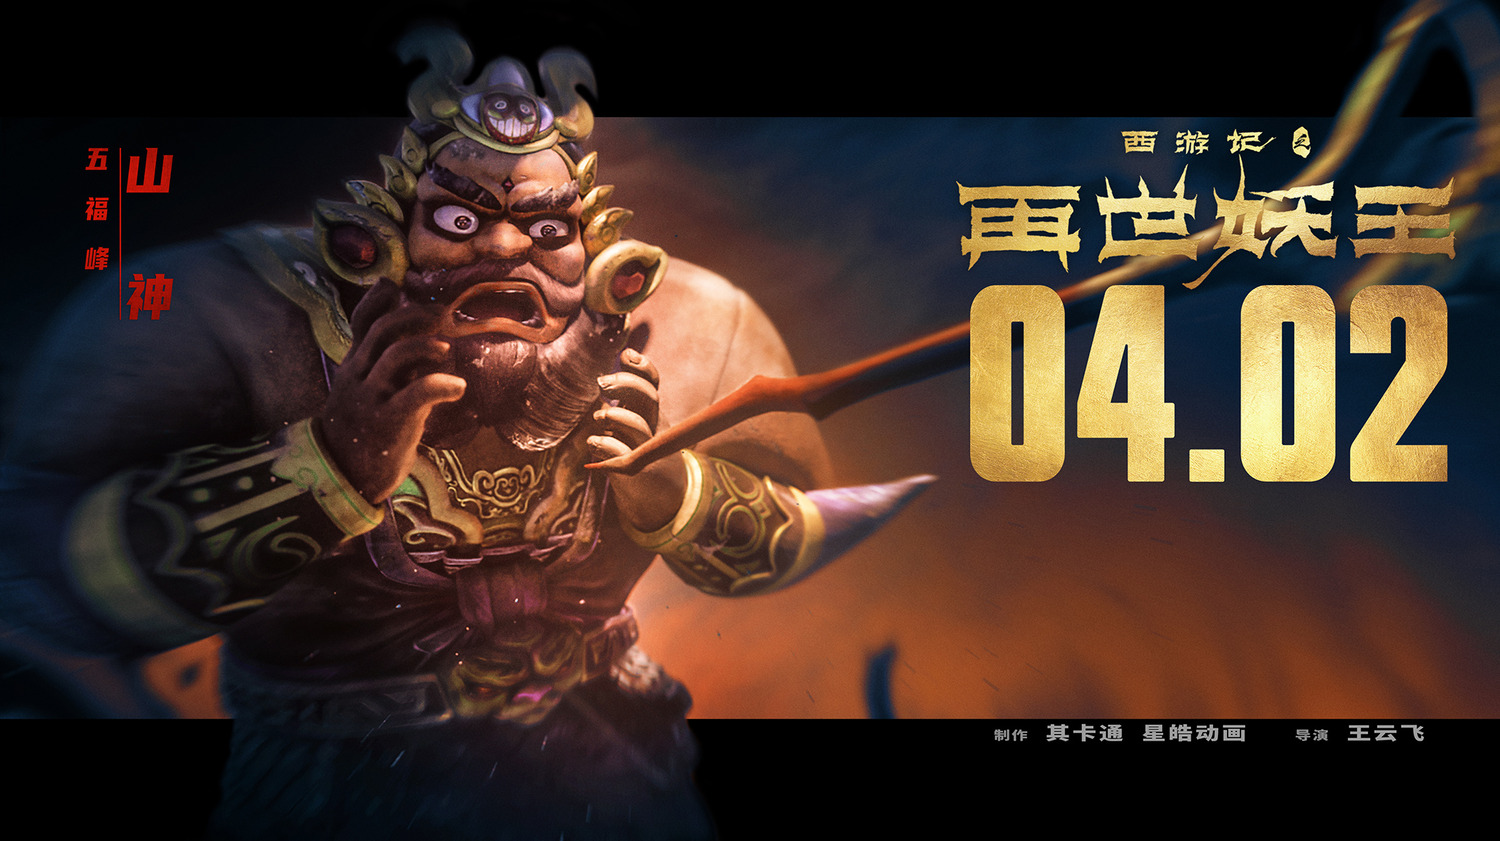 Extra Large Movie Poster Image for Xi You Ji Zhi Zai Shi Yao Wang (#6 of 21)